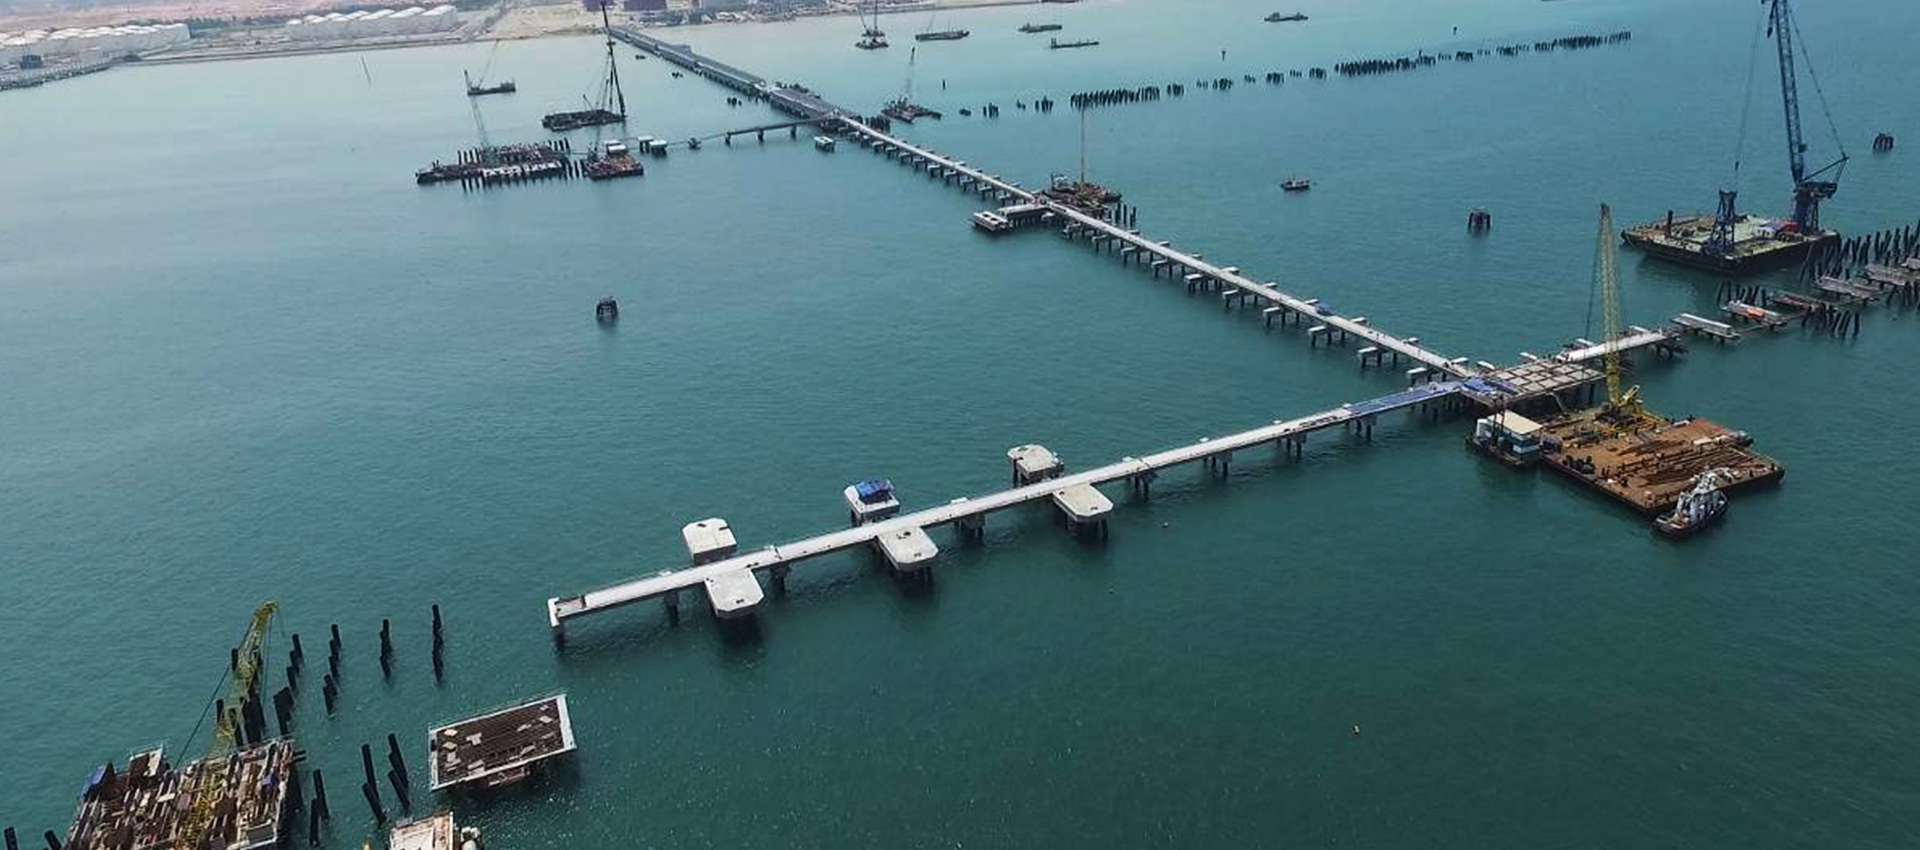 馬來西亞邊佳蘭深水港棧橋管廊工程